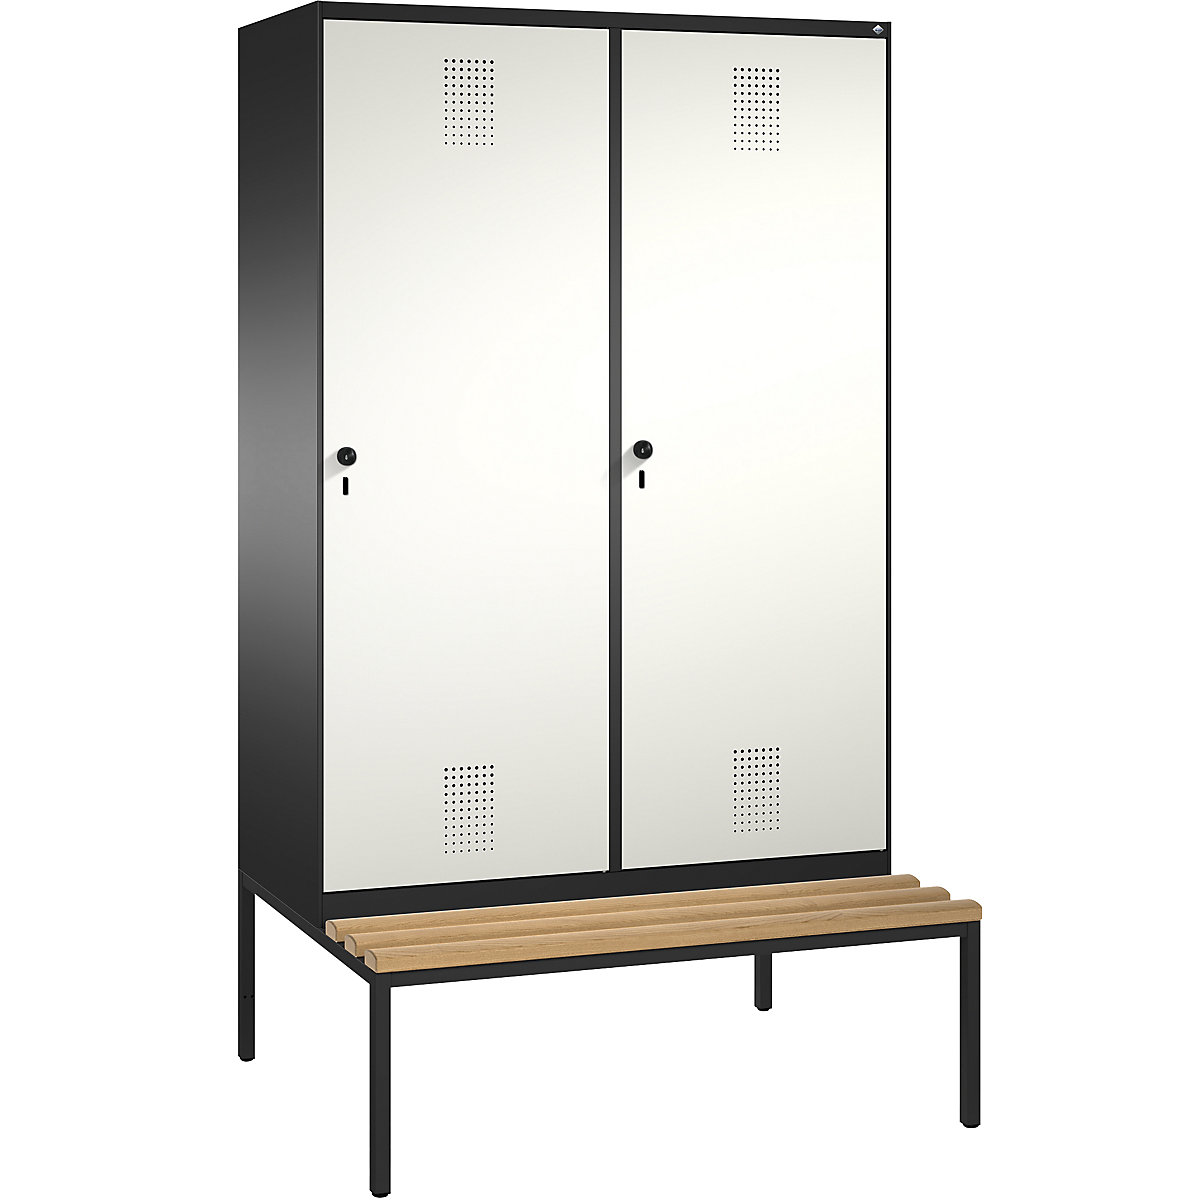 Šatní skříň s lavicí EVOLO s dveřmi přes 2 oddíly – C+P, 4 oddíly, 2 dveře, šířka oddílu 300 mm, černošedá / čistá bílá-5